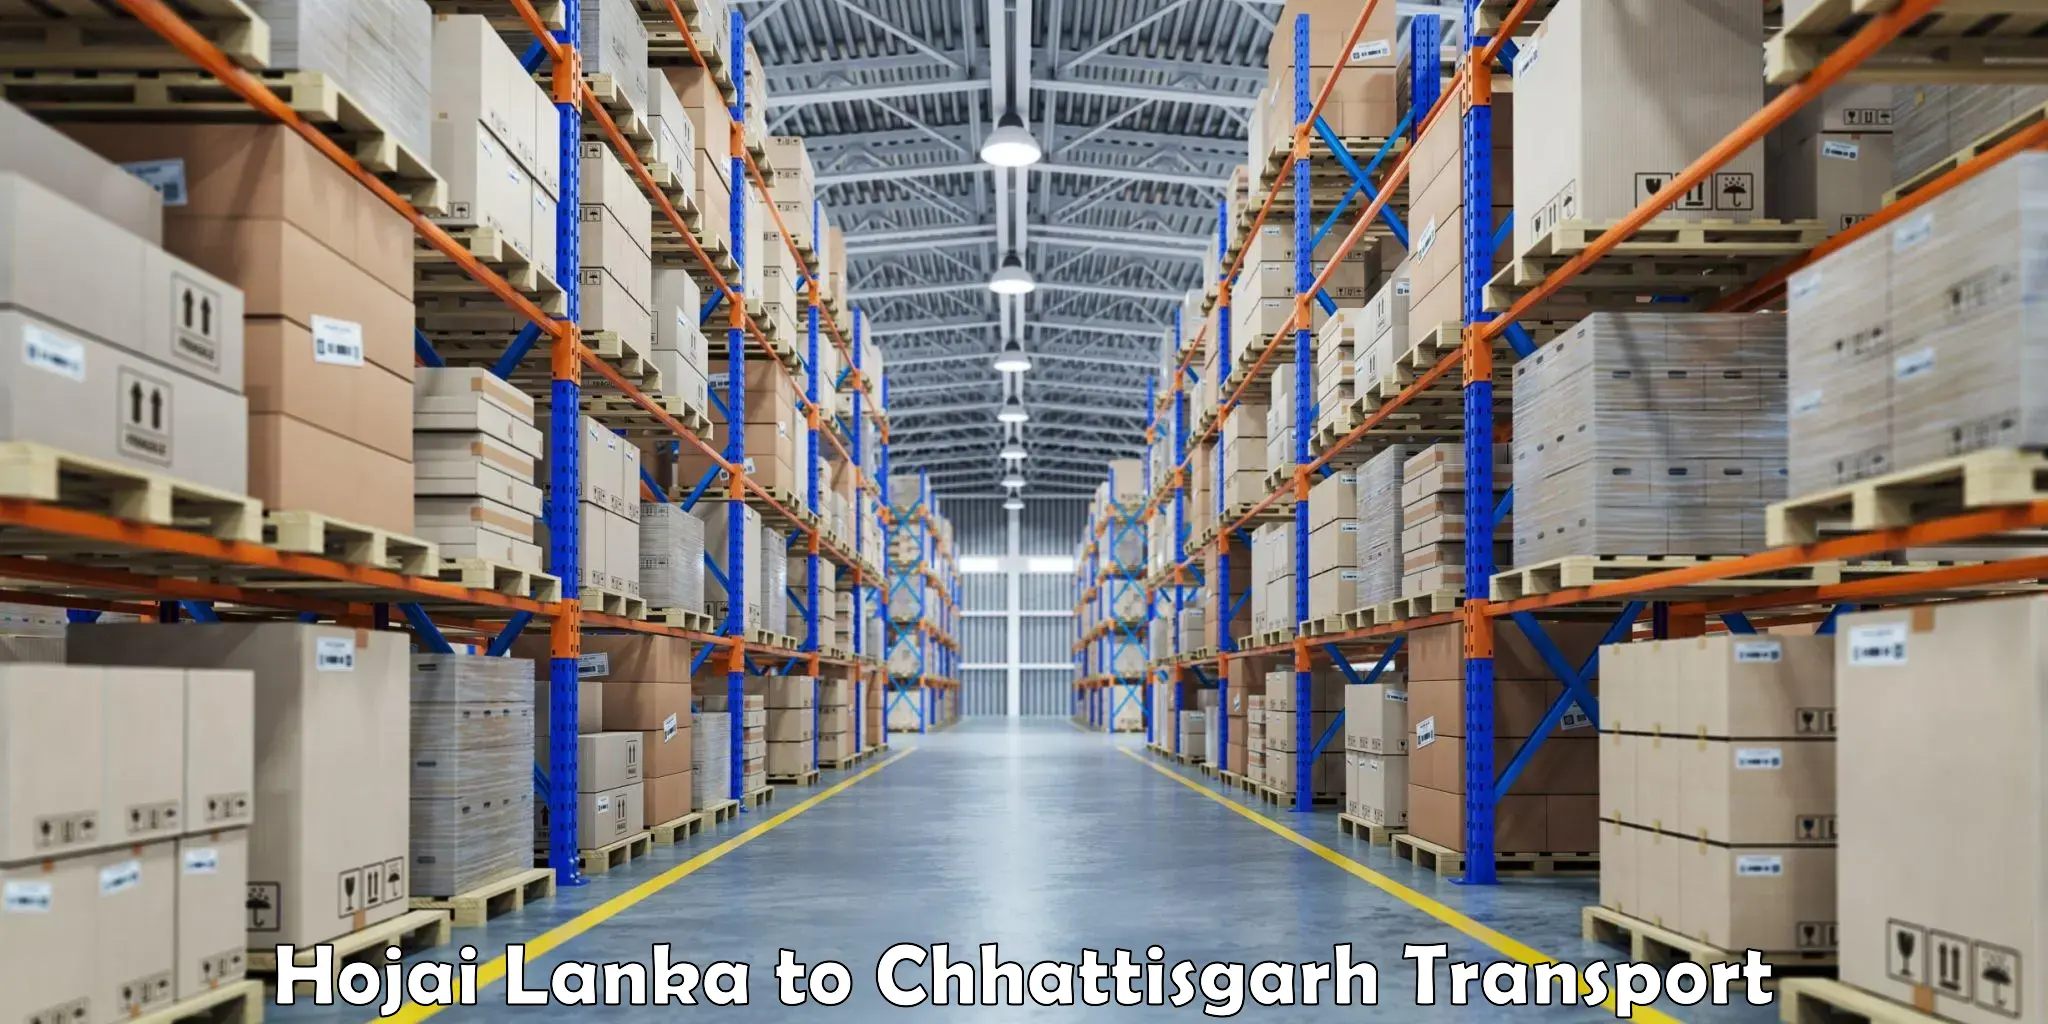 Furniture transport service Hojai Lanka to Janjgir Champa